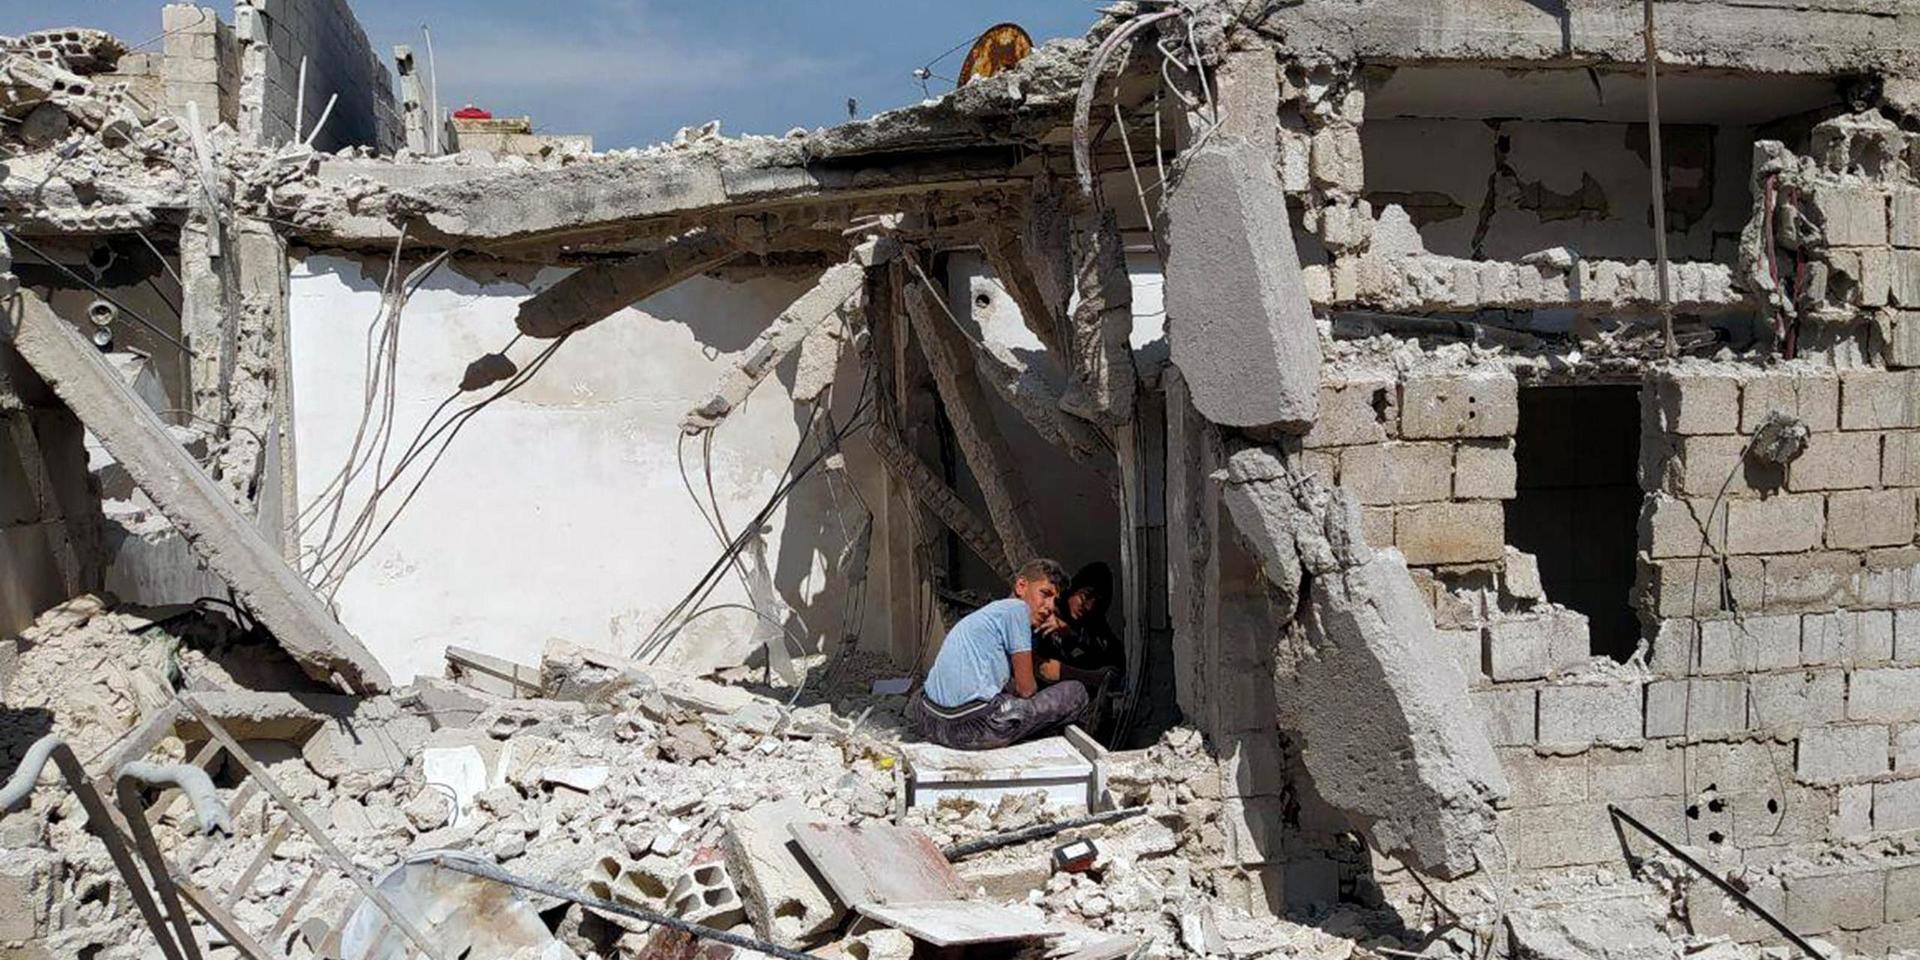 Pojkar leker i en ruin i en förort till det krigshärjade Syriens huvudstad Damaskus. 